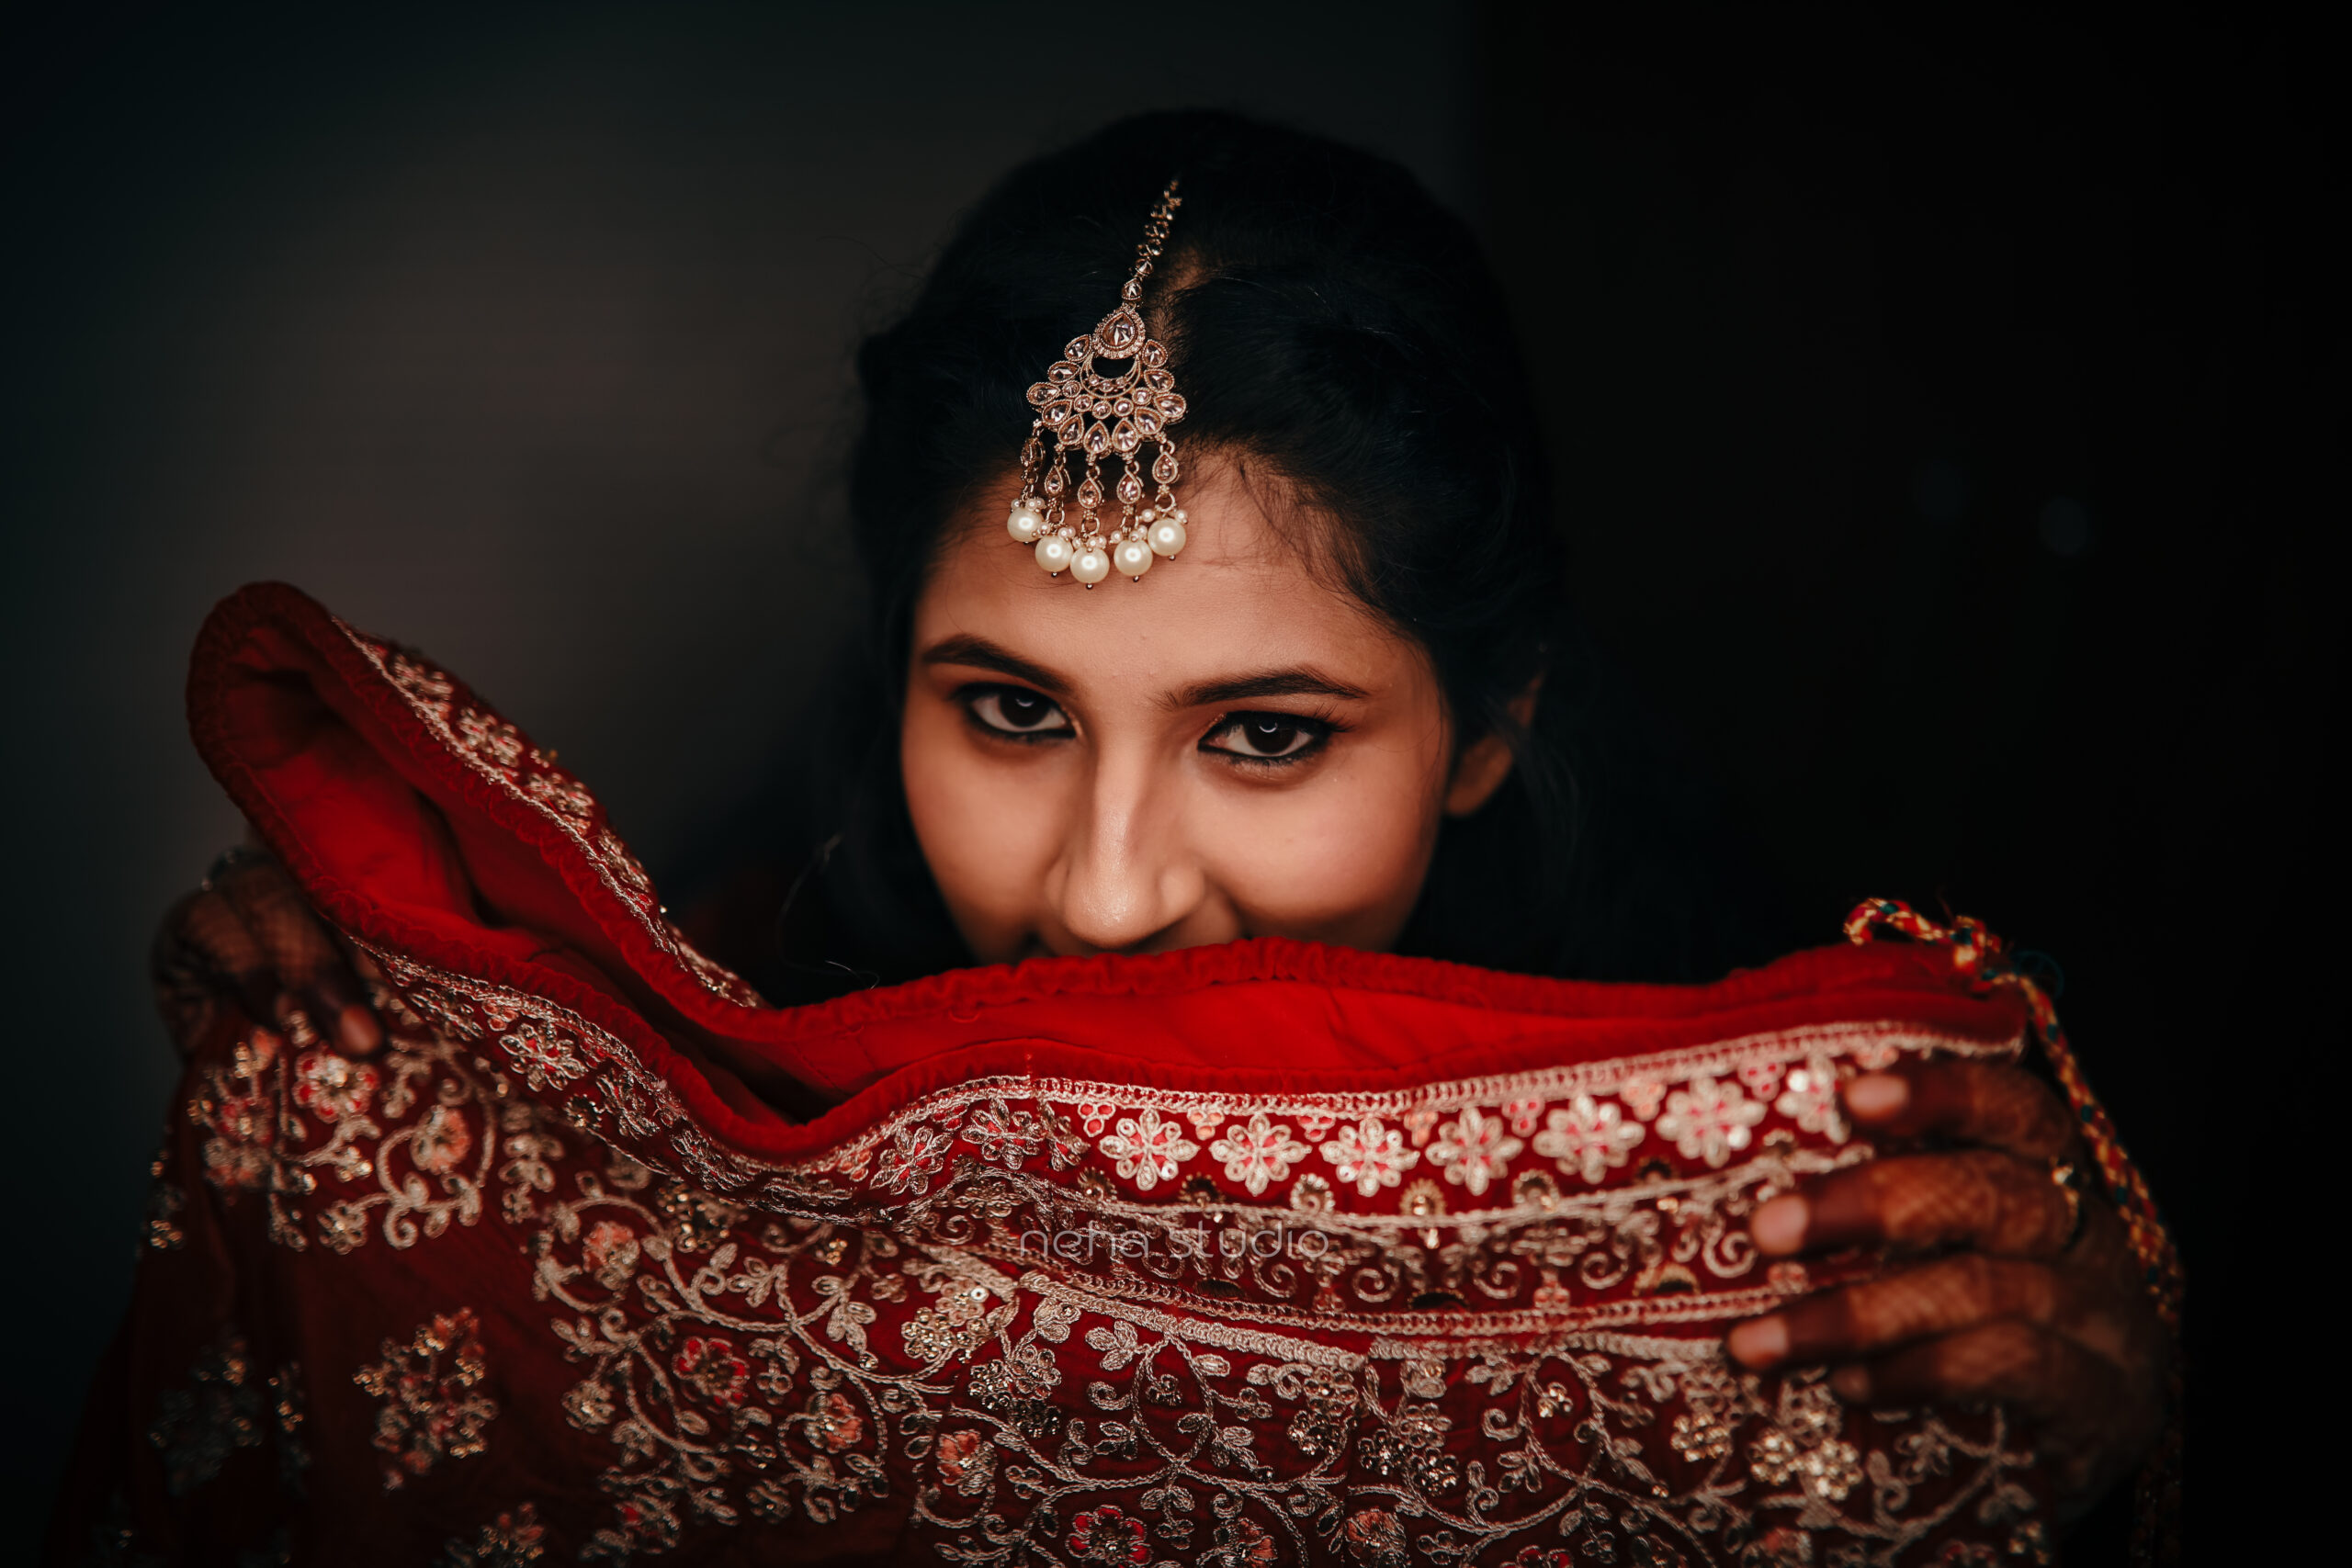 A woman in a red dress photo – Free Manjishtha mukherjee diwali look Image  on Unsplash